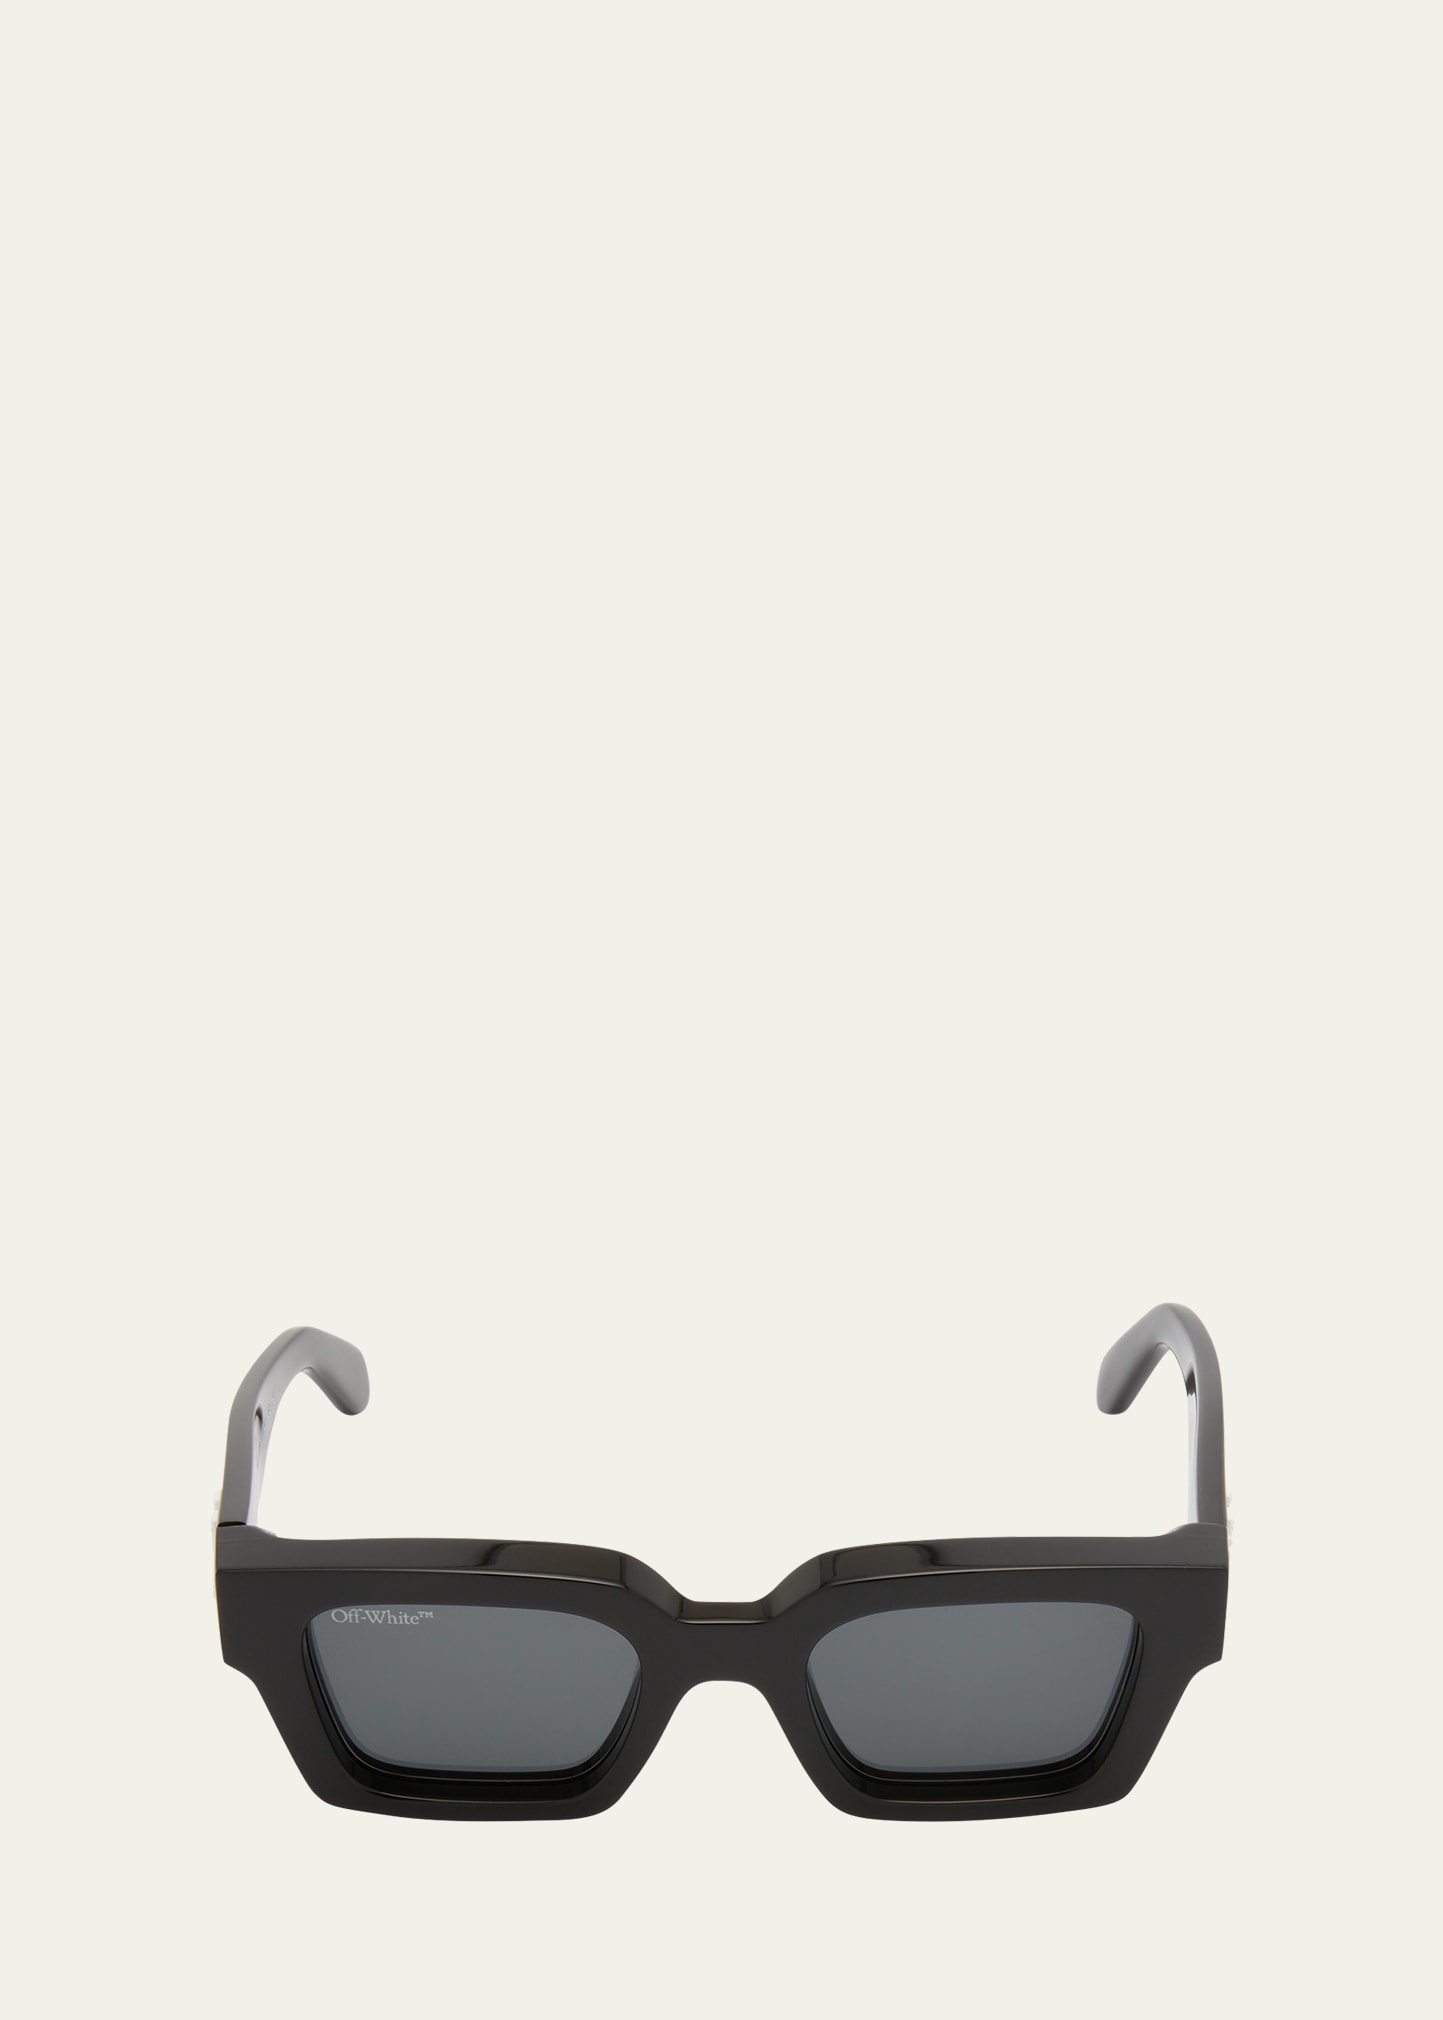 Off-white Men's Virgil Abloh's Sunglasses In Black Dark Grey